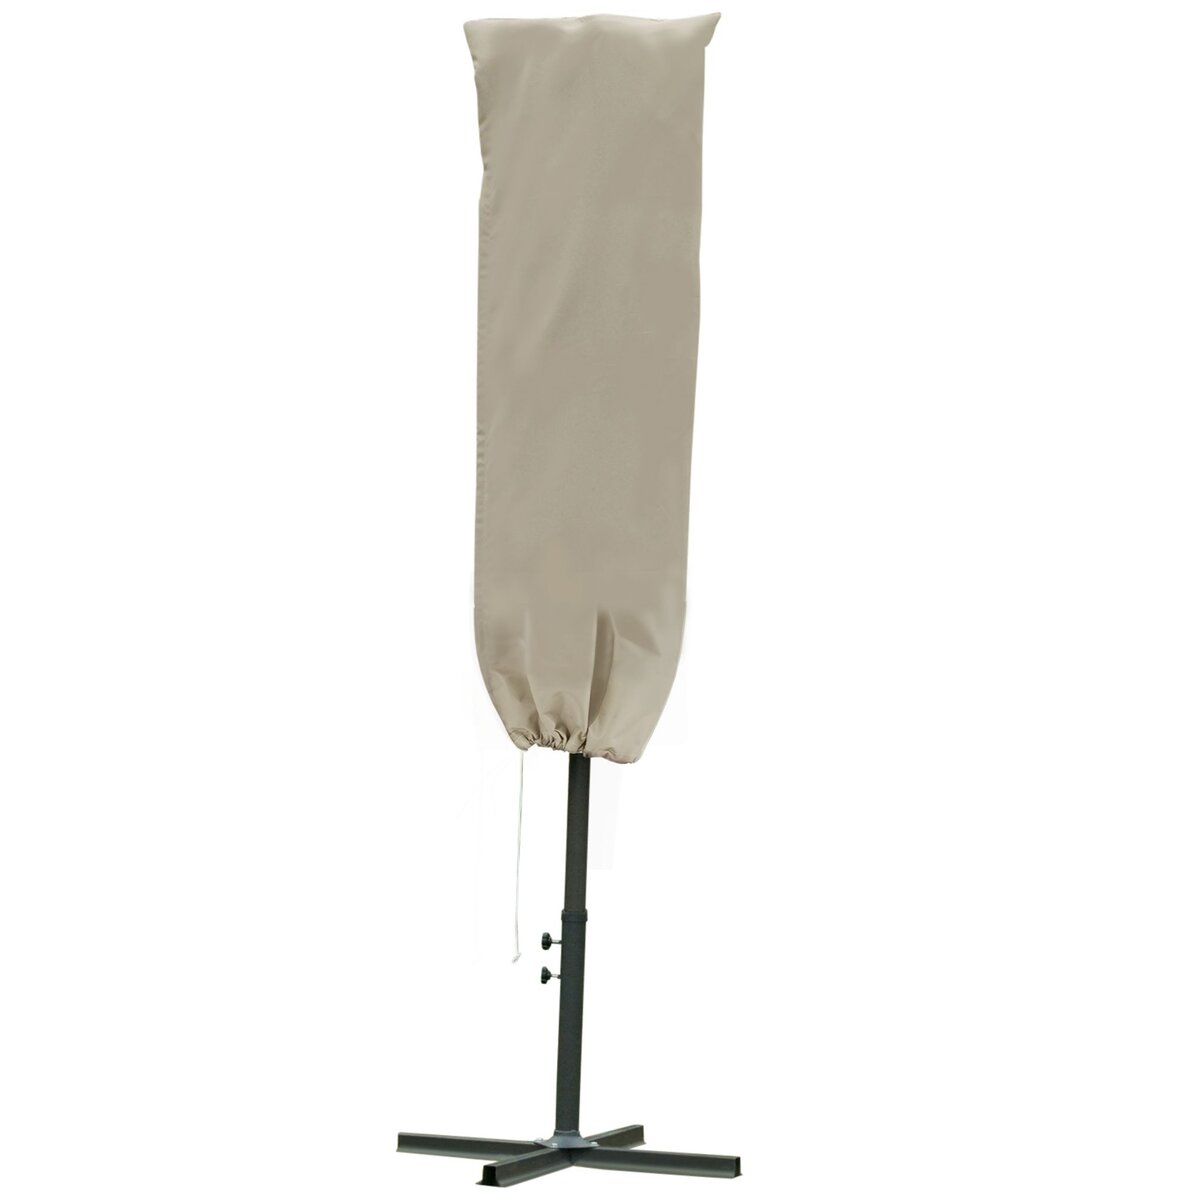 OUTSUNNY Housse de protection imperméable pour parasol droit avec fermeture éclair et cordon de serrage polyester oxford kaki léger